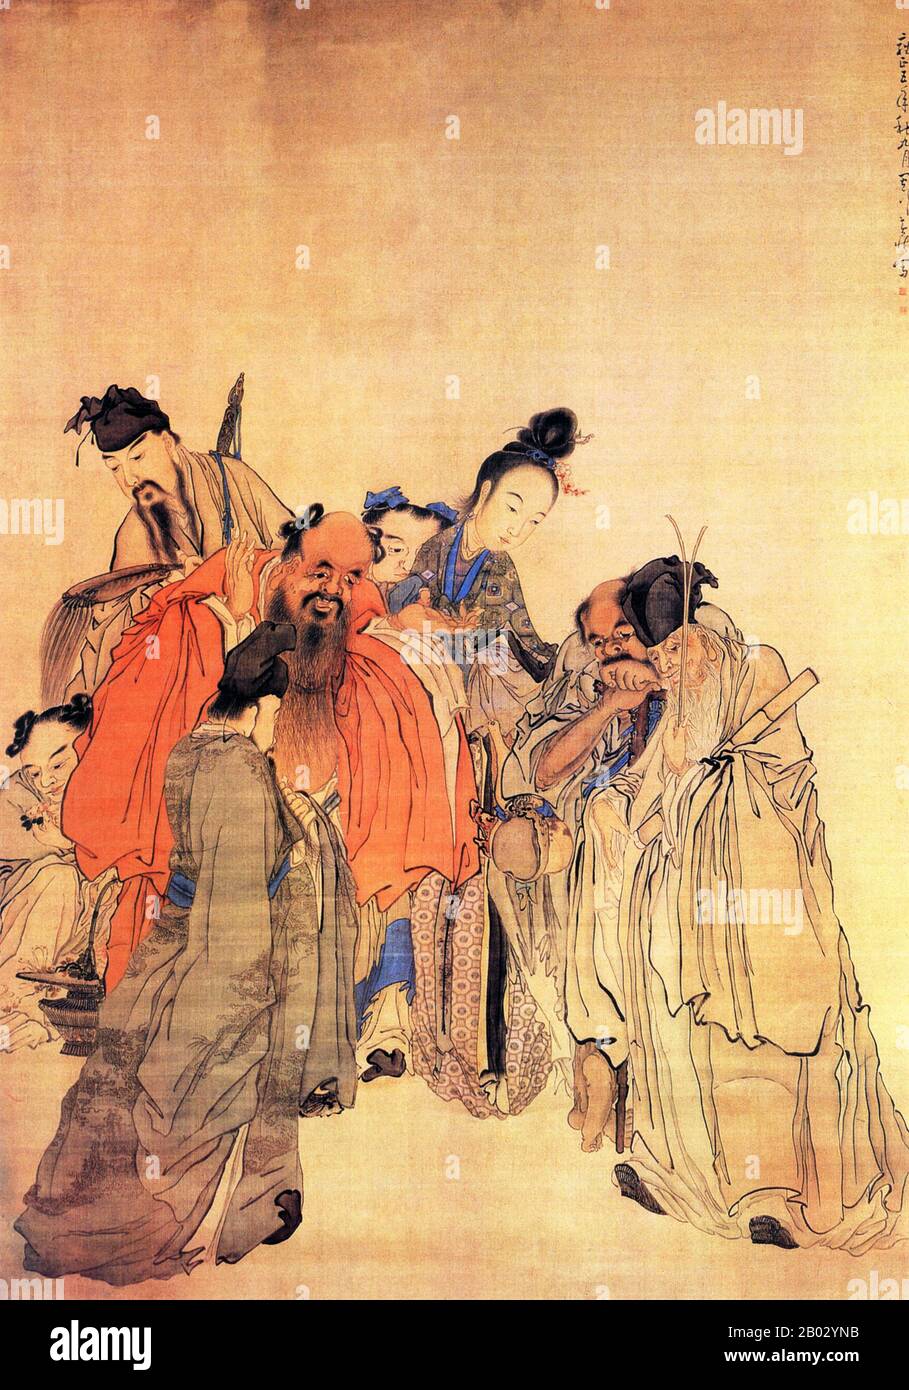 Huang Shen fue un pintor chino durante la dinastía Qing. Huang nació en Ninghua, provincia de Fujian, de una familia pobre. Comenzó su formación bajo el pintor Shangguan Zhou. En la primera parte de su carrera se destacó en la caligrafía cursiva y favoreció un estilo meticuloso modelado según ni Zan. Se convirtió en un mejor conocido como un artista de la creación de una de las Ocho Excéntricas de Yangzhou. Cuando se trata de pinturas de personas, él favoreció imágenes de personas religiosas, históricas y comunes. Sus obras más famosas incluyen El Borracho Monk y Shepherd su Wu. Foto de stock